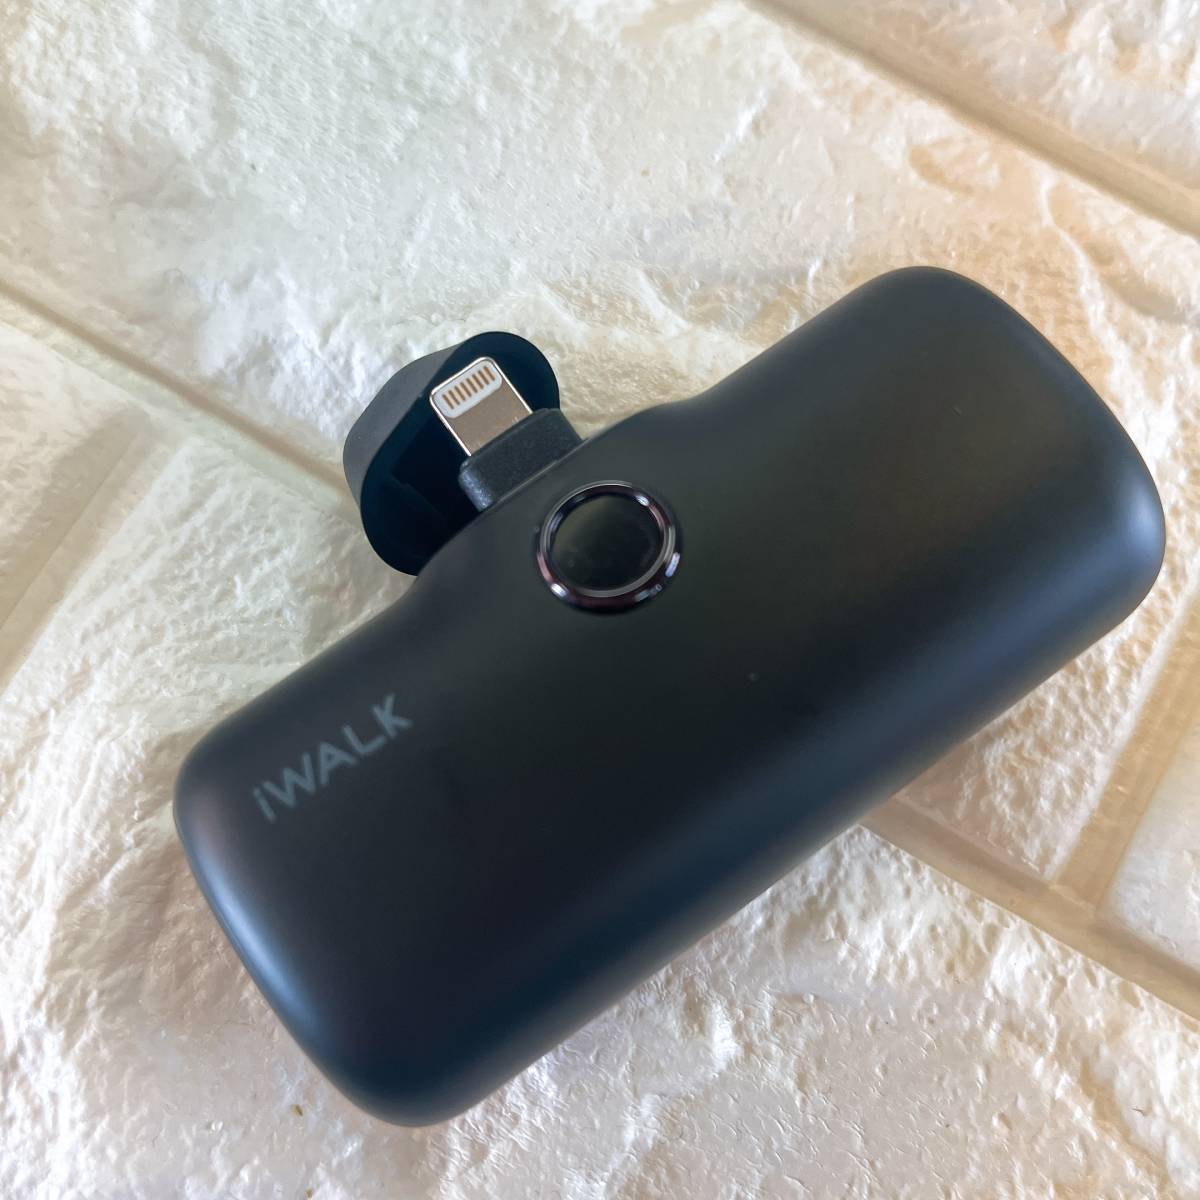 【美品】iWALK モバイルバッテリー 超小型 iPhone 4800mAh コネクター内蔵 コードレス 軽量 急速充電 iPhone用 ブラック_画像8